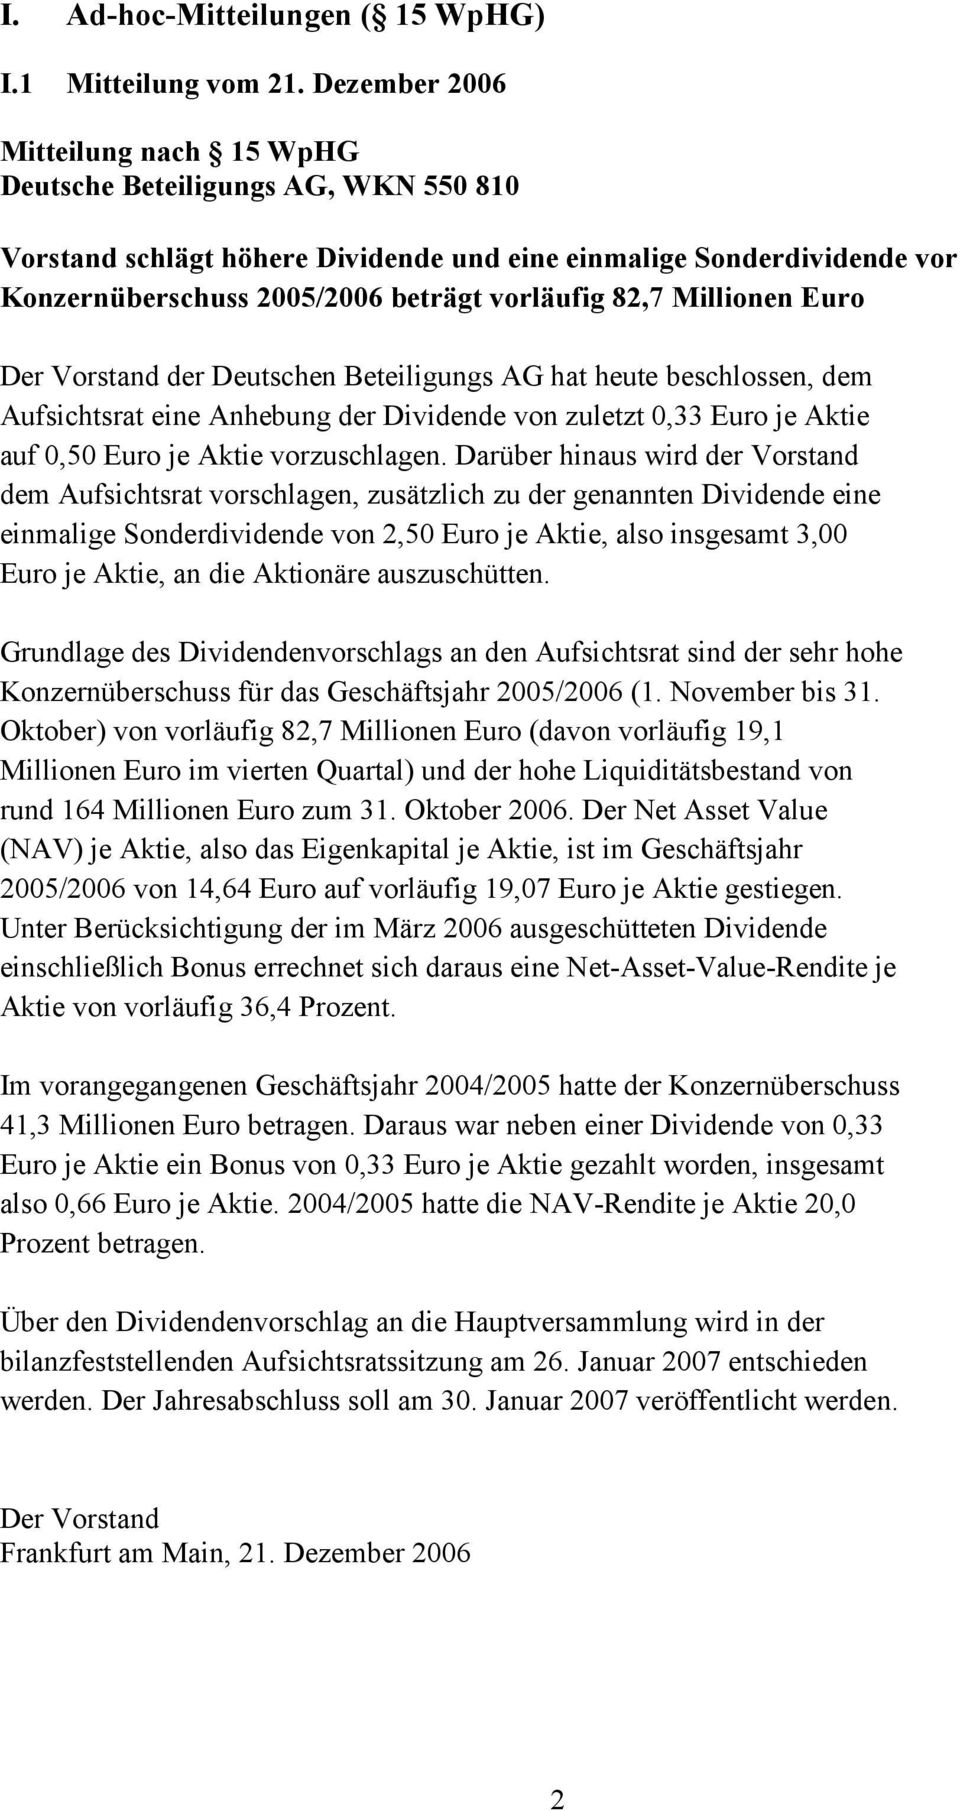 Millionen Euro Der Vorstand der Deutschen Beteiligungs AG hat heute beschlossen, dem Aufsichtsrat eine Anhebung der Dividende von zuletzt 0,33 Euro je Aktie auf 0,50 Euro je Aktie vorzuschlagen.